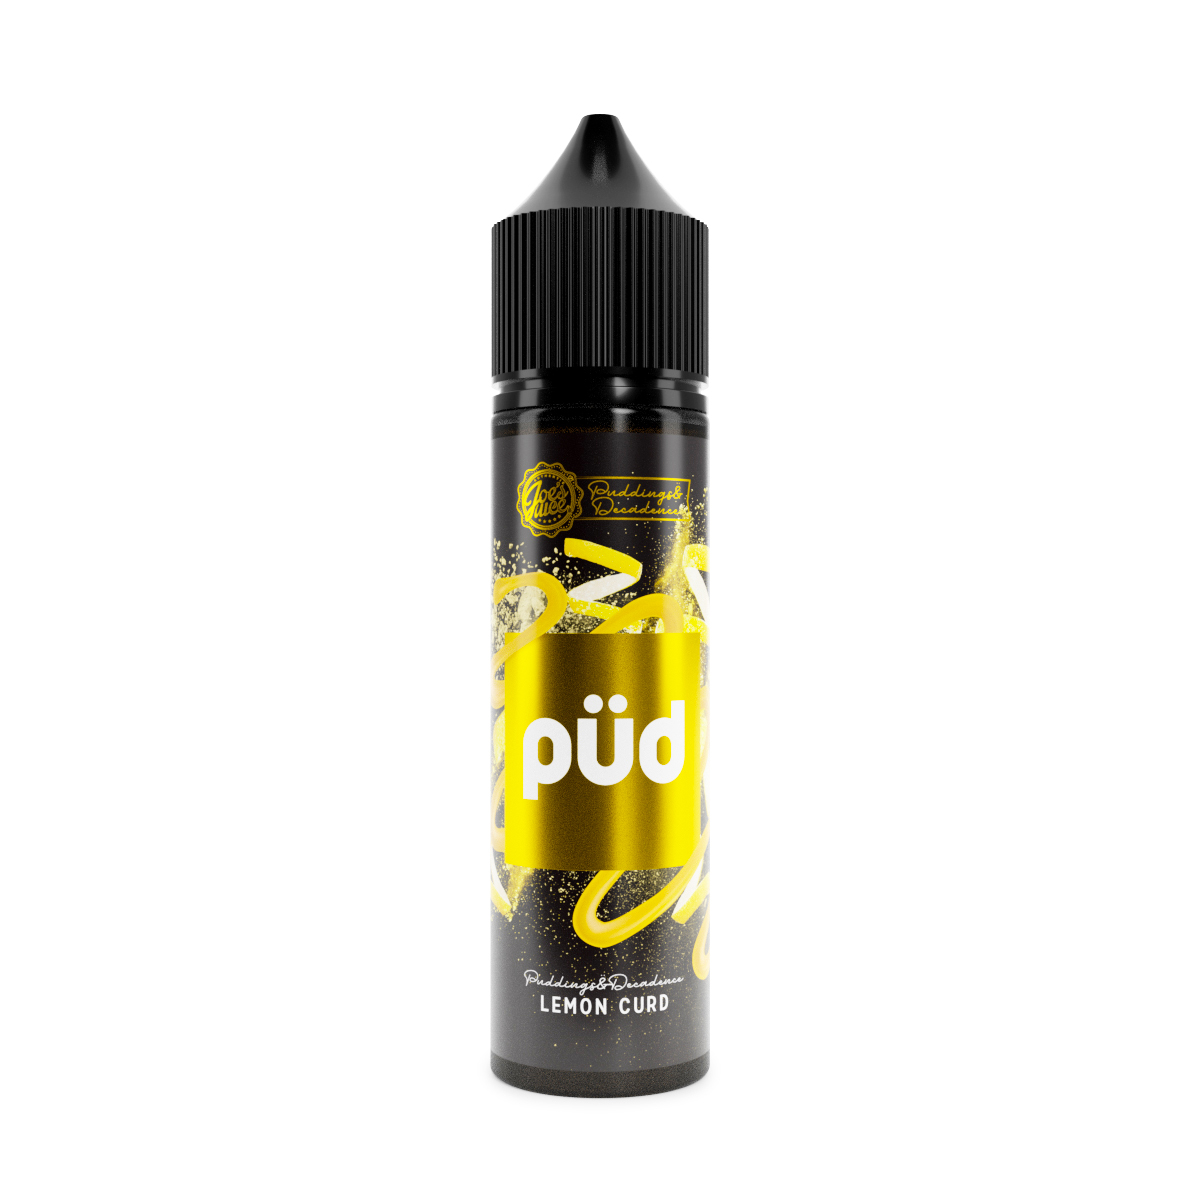 PUD - Lemon Curd Flavour Concentrate by Joe's Juice